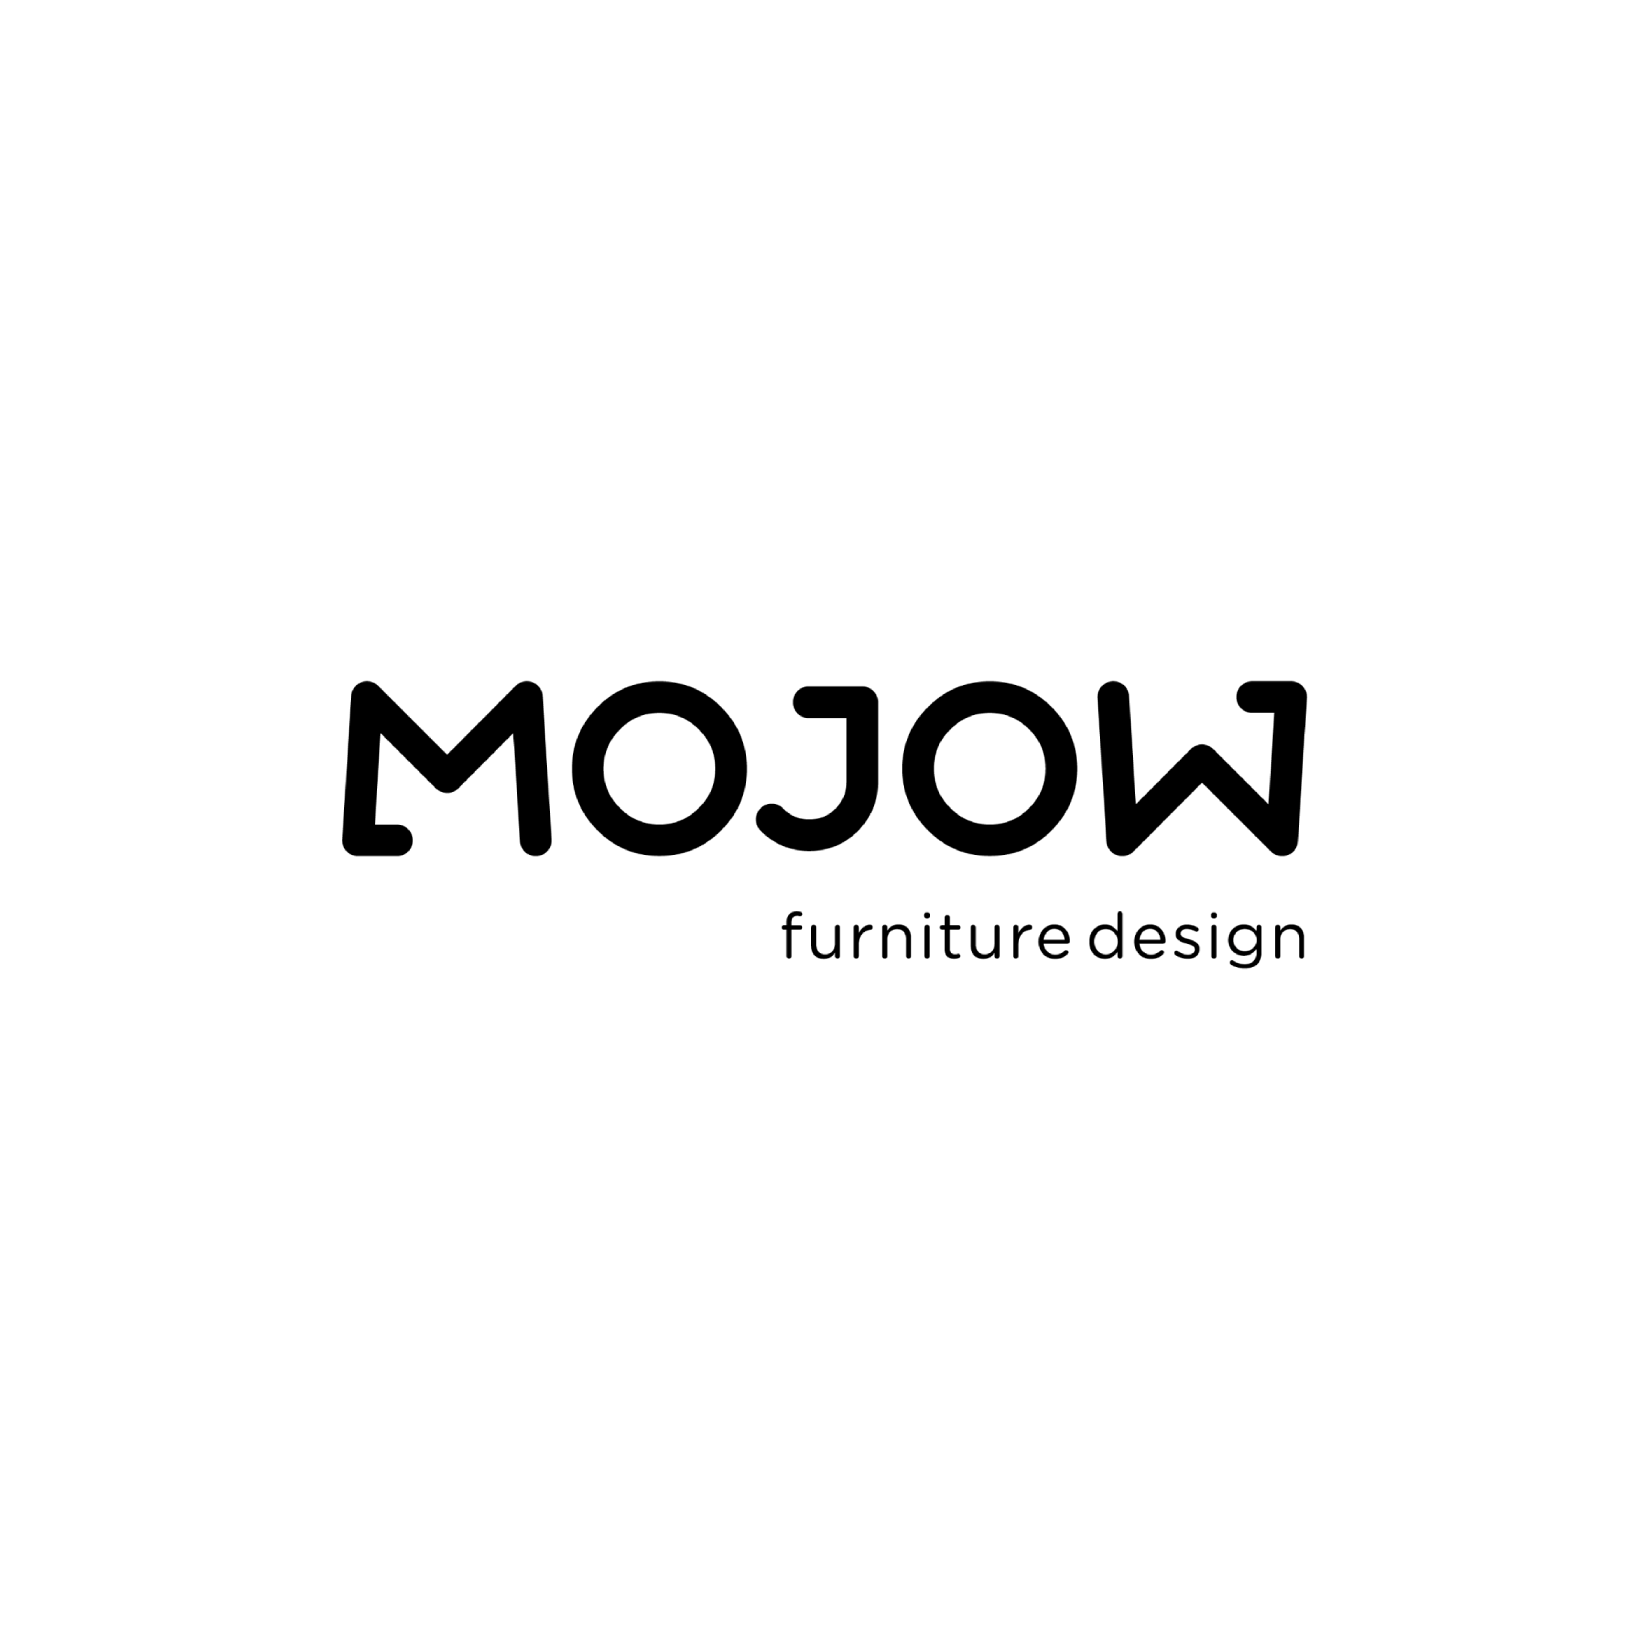 Mojow